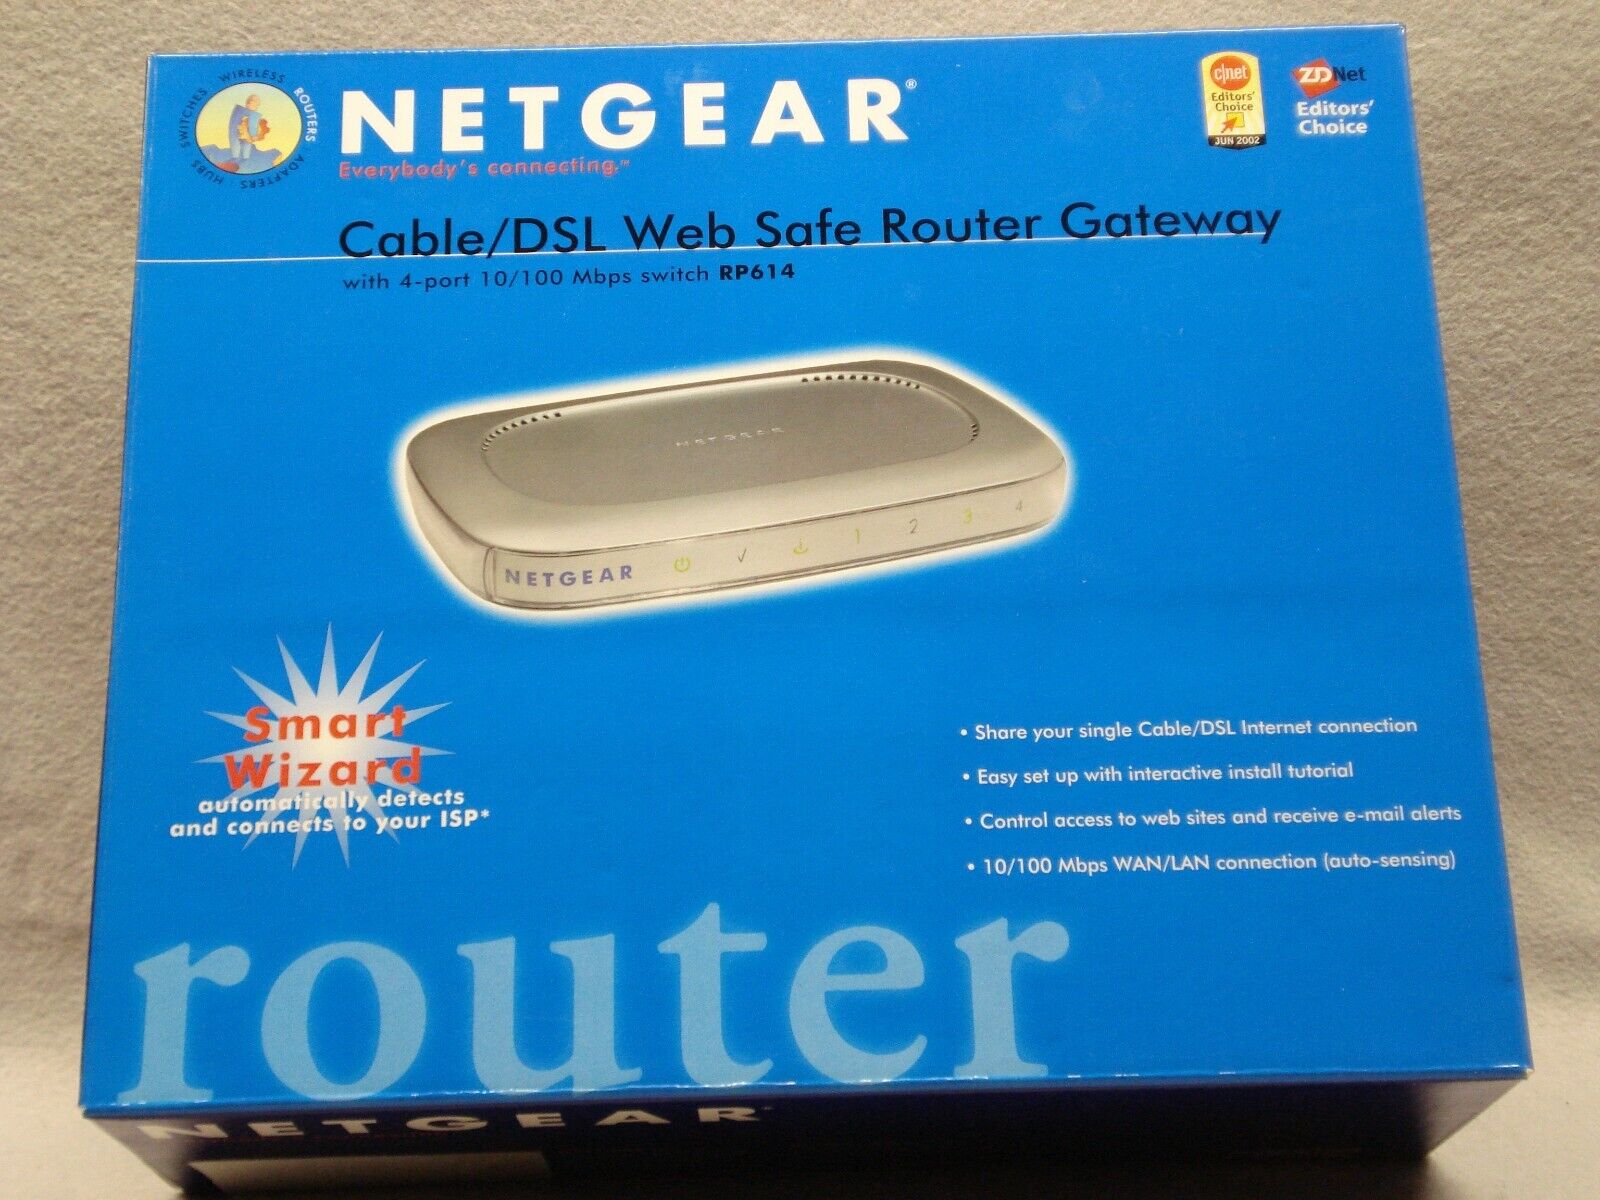 Netgear Cable/DSL Web Safe Router Gateway 4 Port Switch RP614